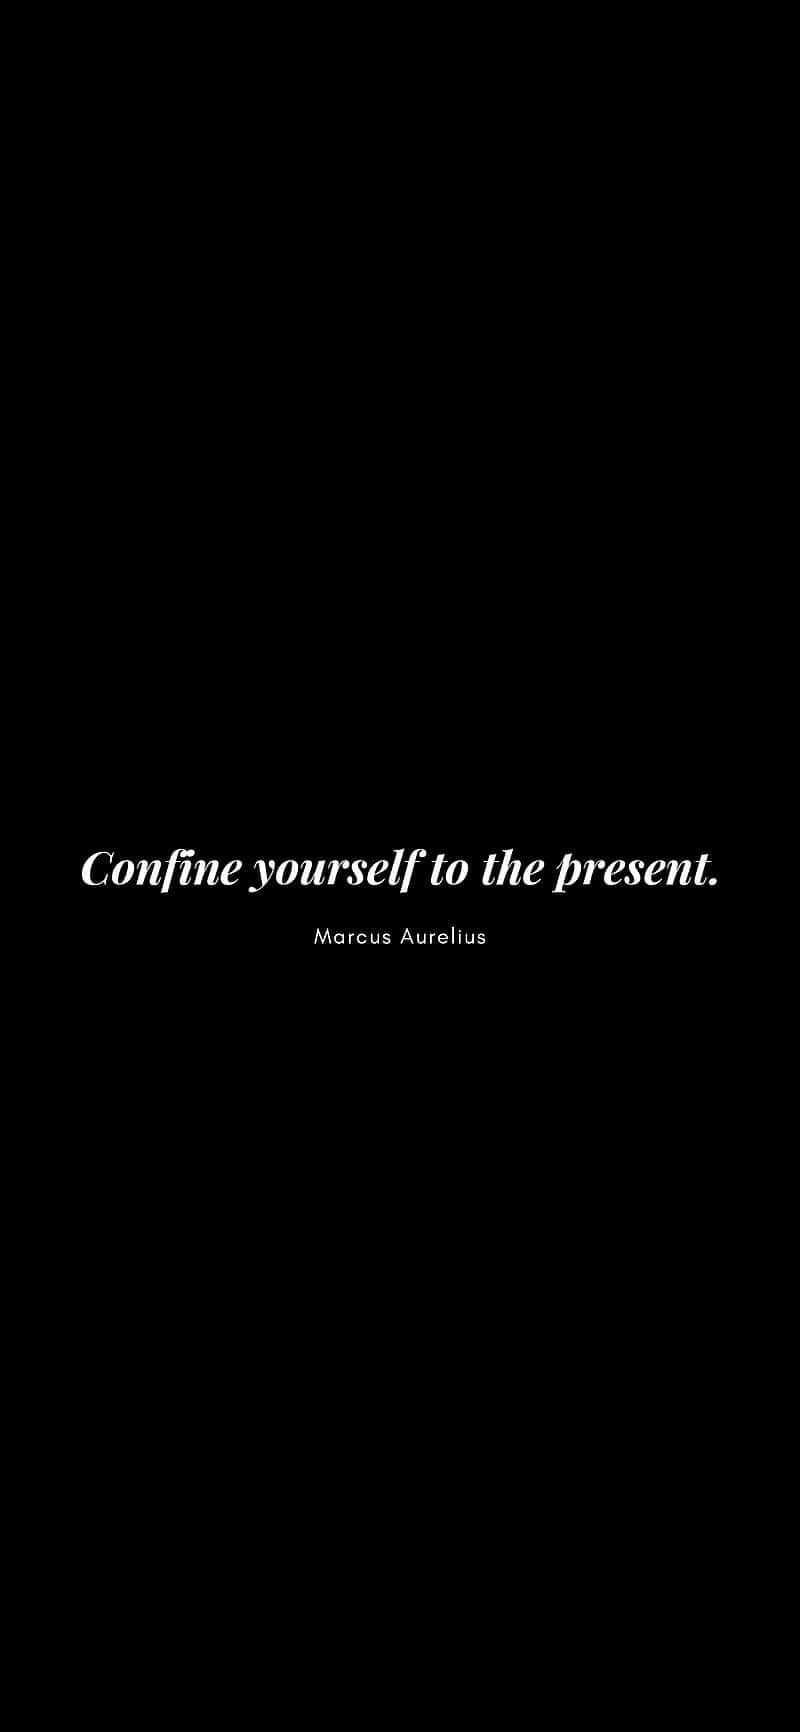 Marcus Aurelius Quote Present Moment Wallpaper